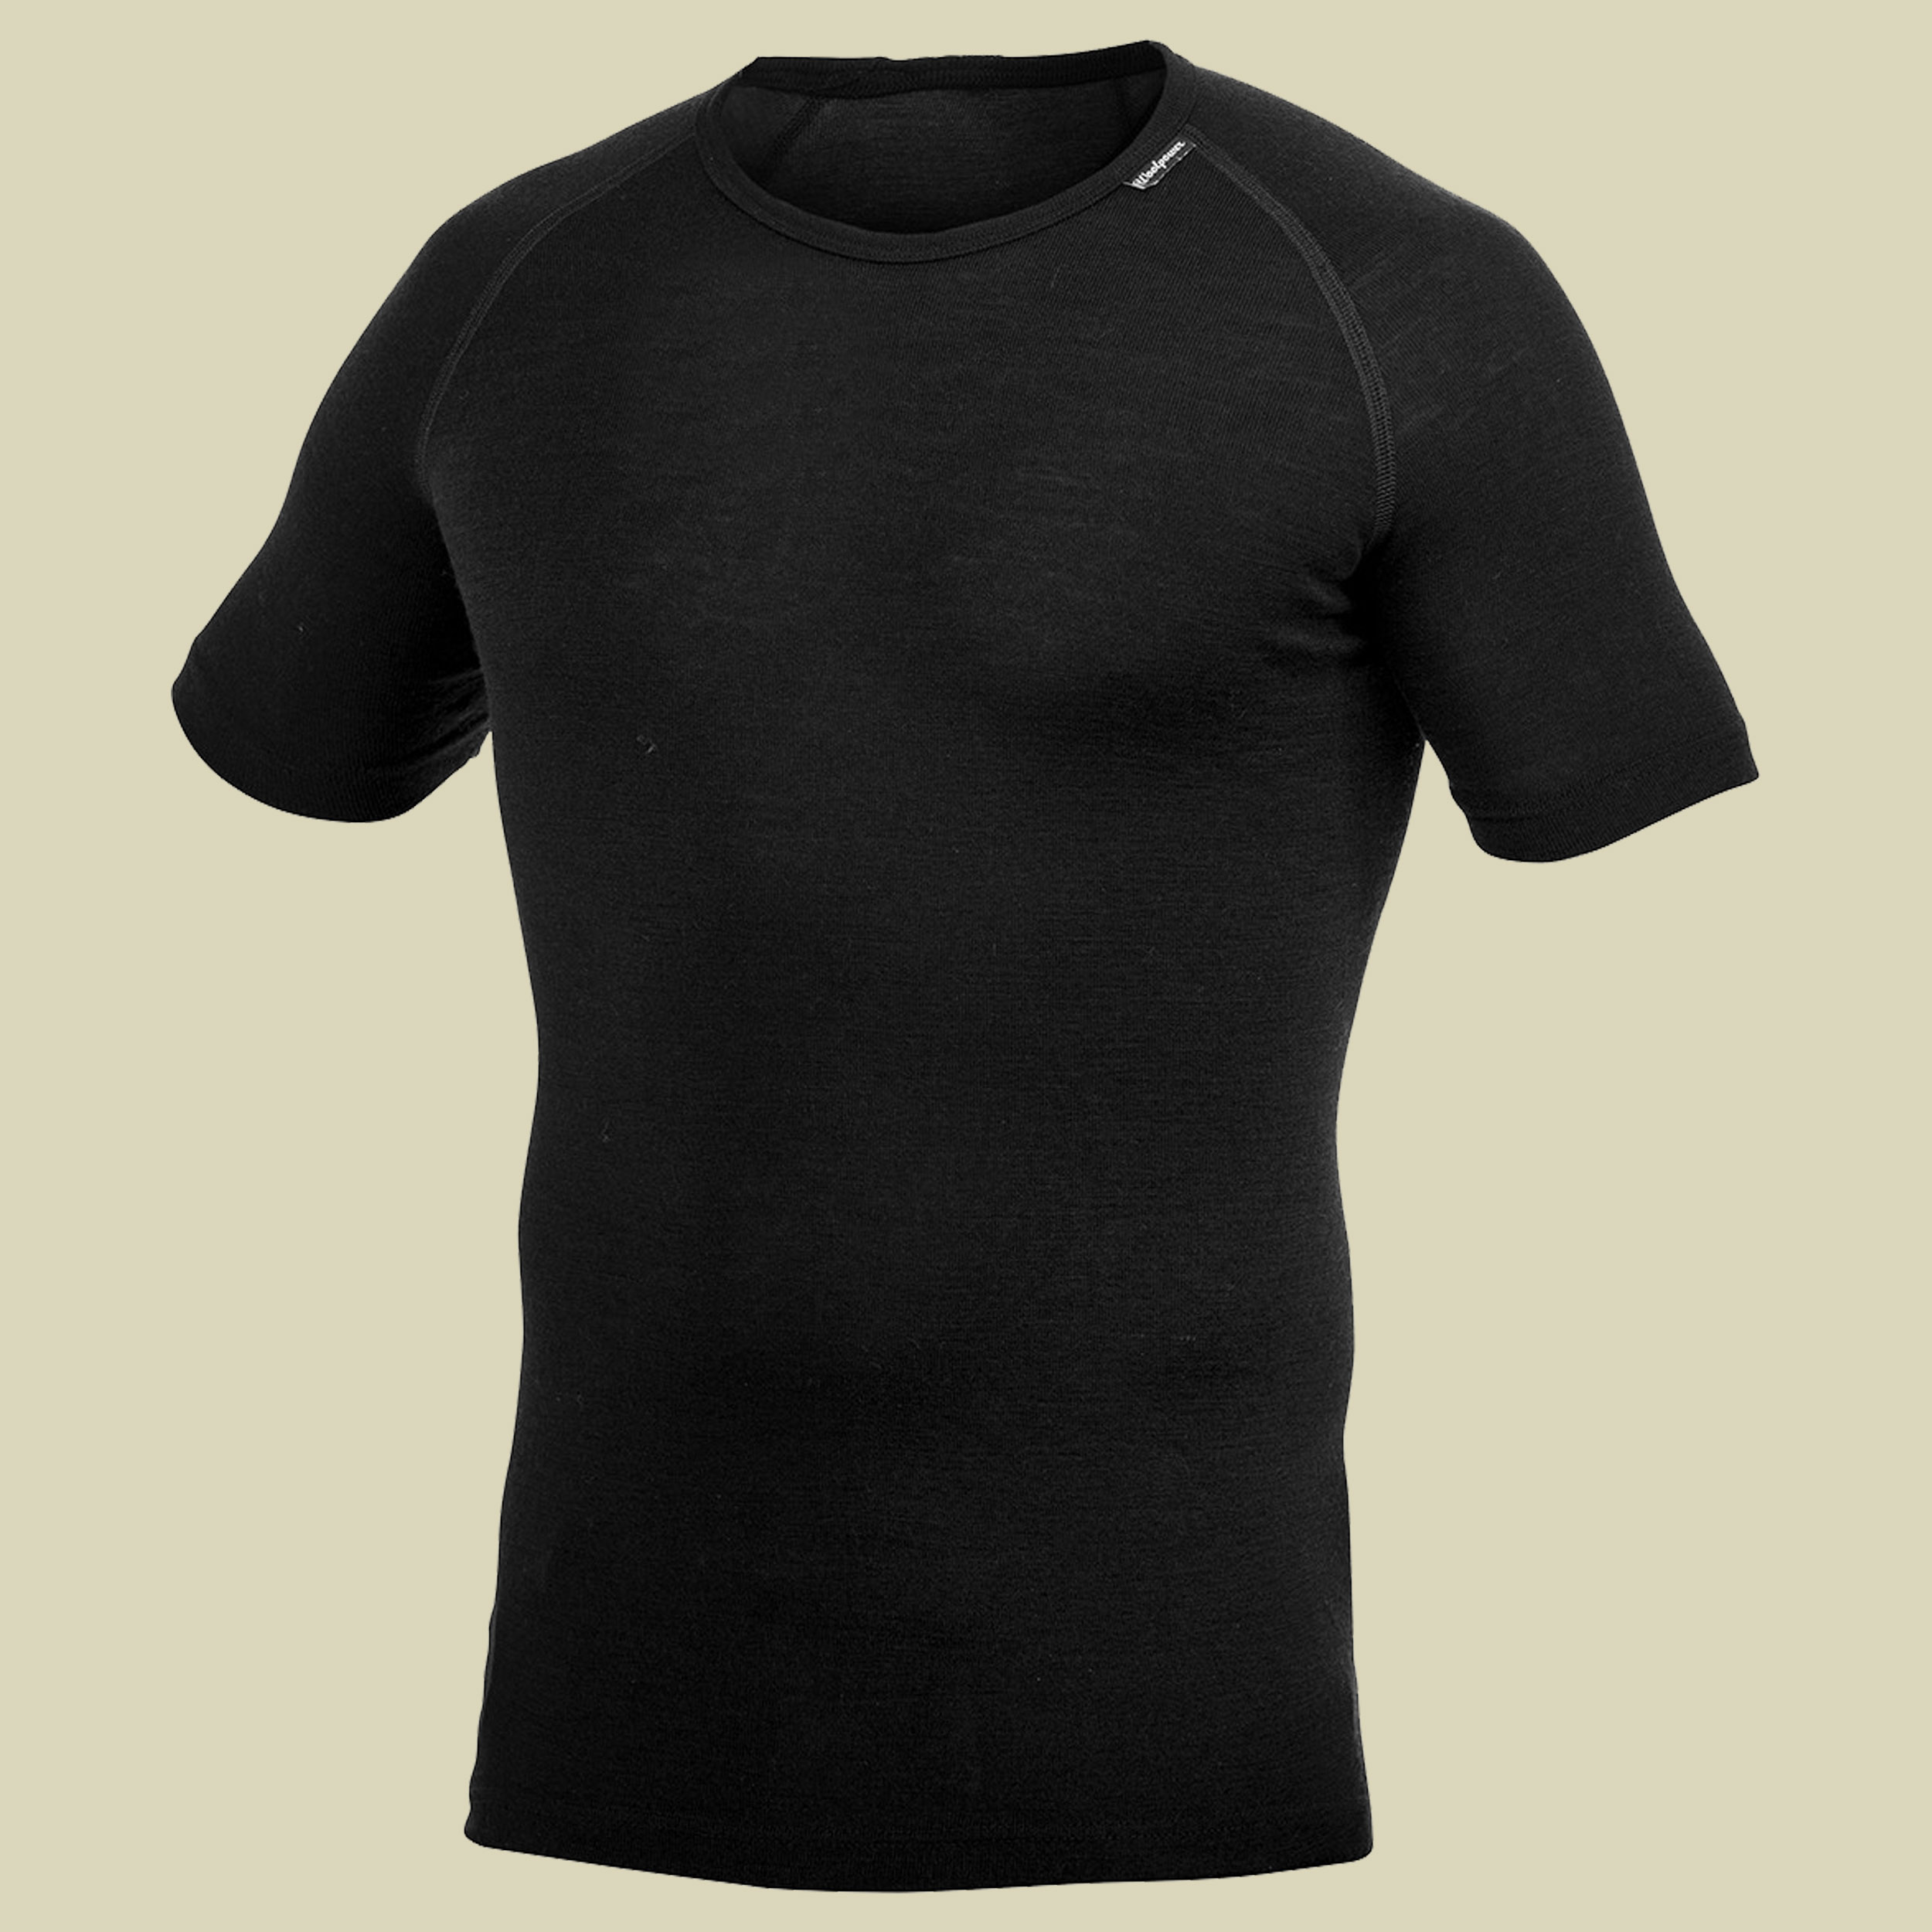 Lite T-Shirt L schwarz - Farbe black